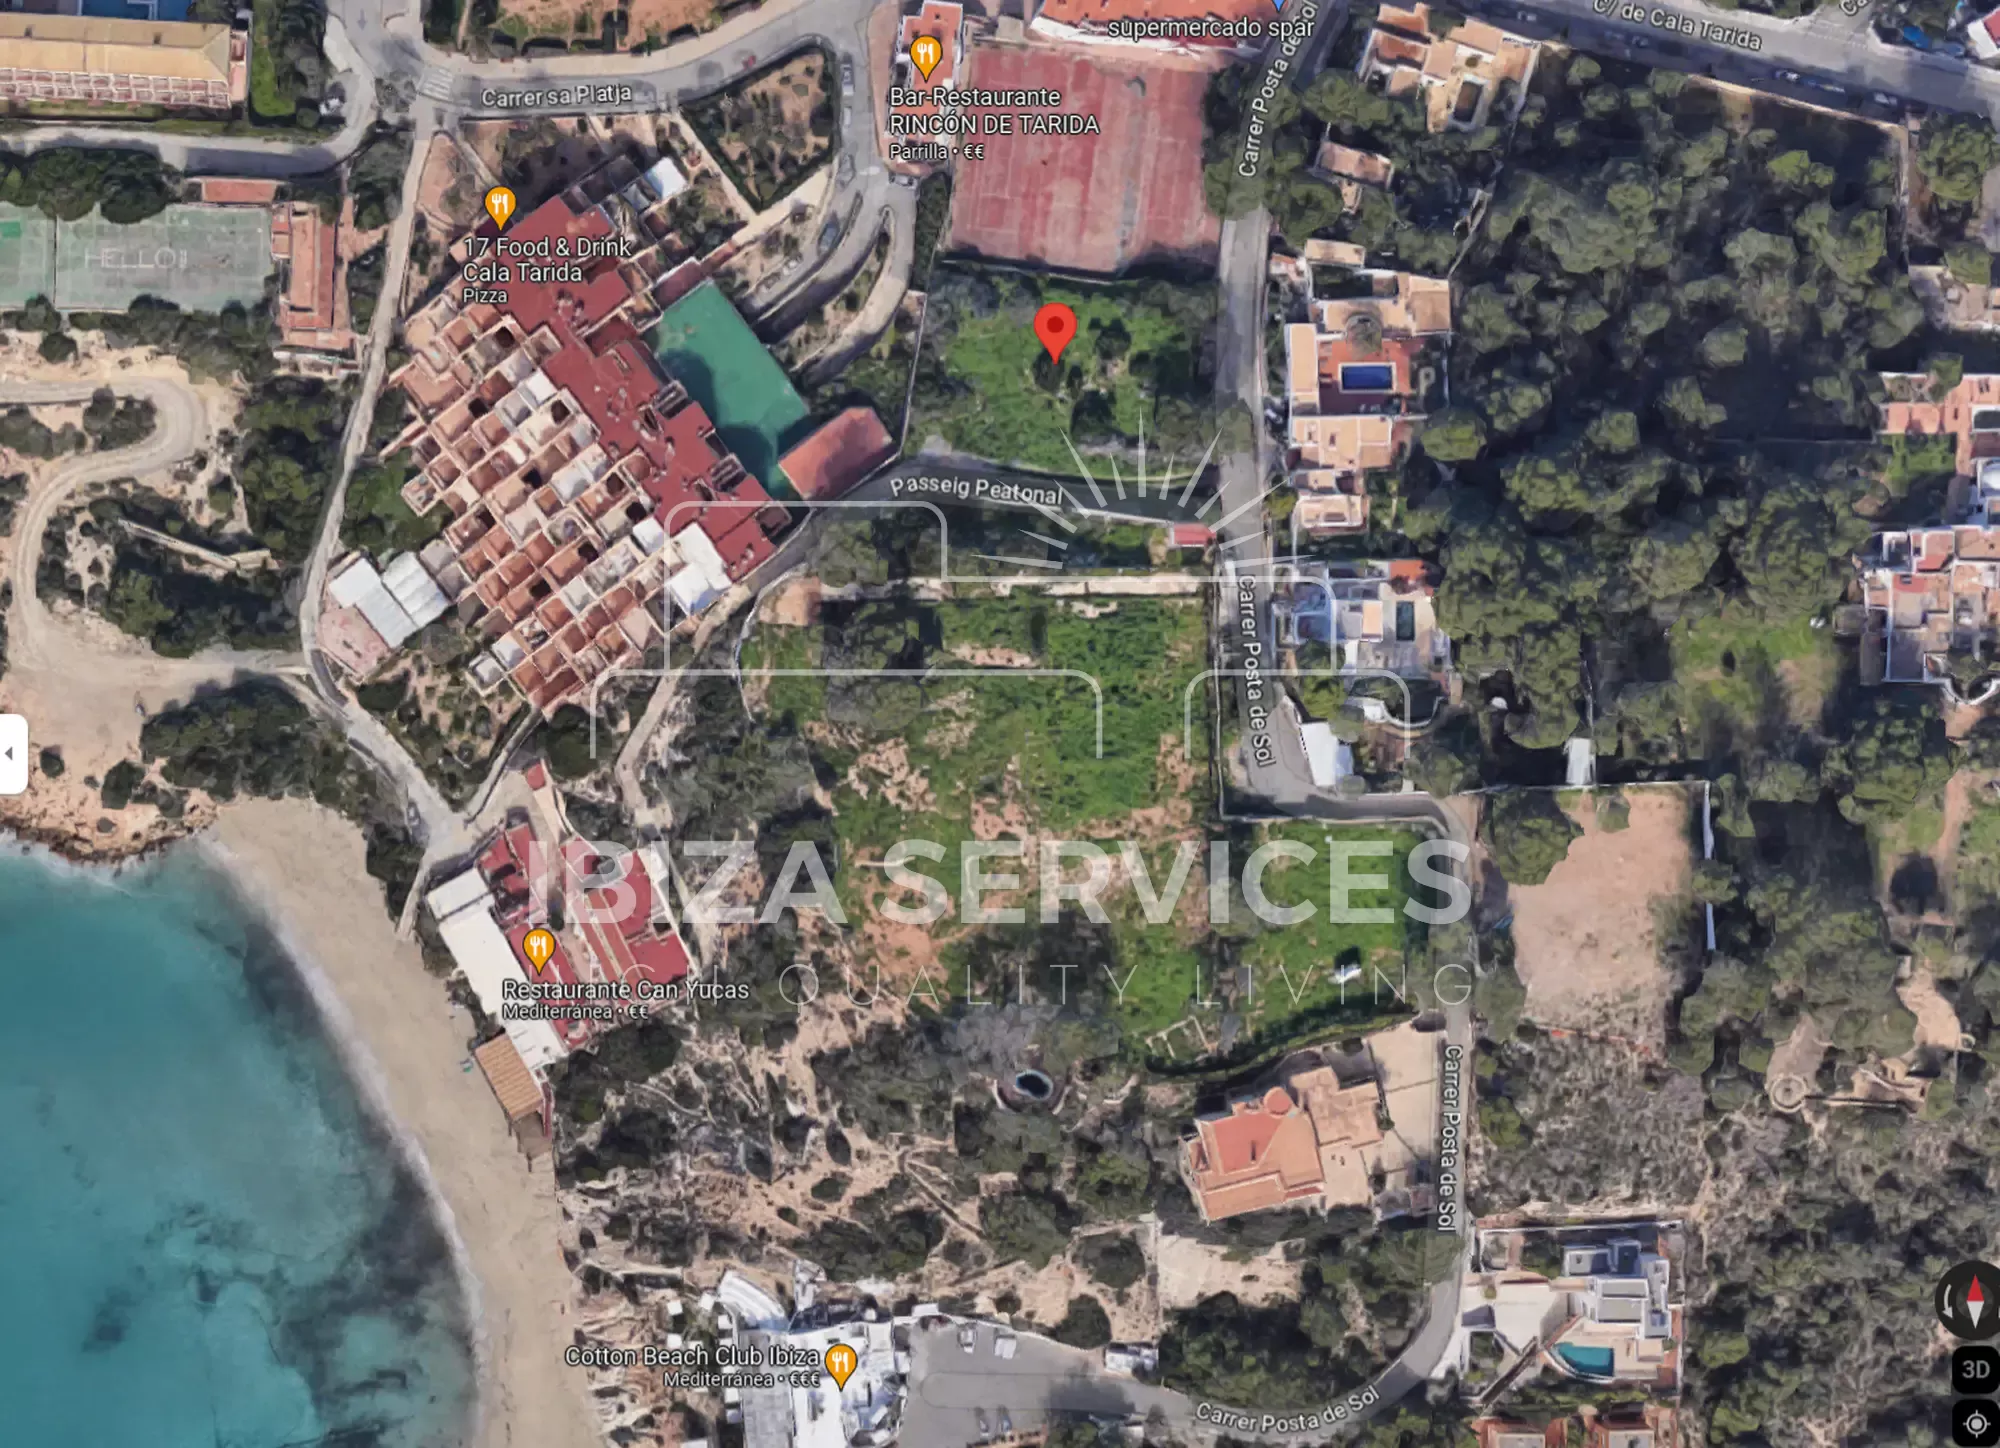 Cala tarida, terrain à vendre avec projet et accès direct à la plage.